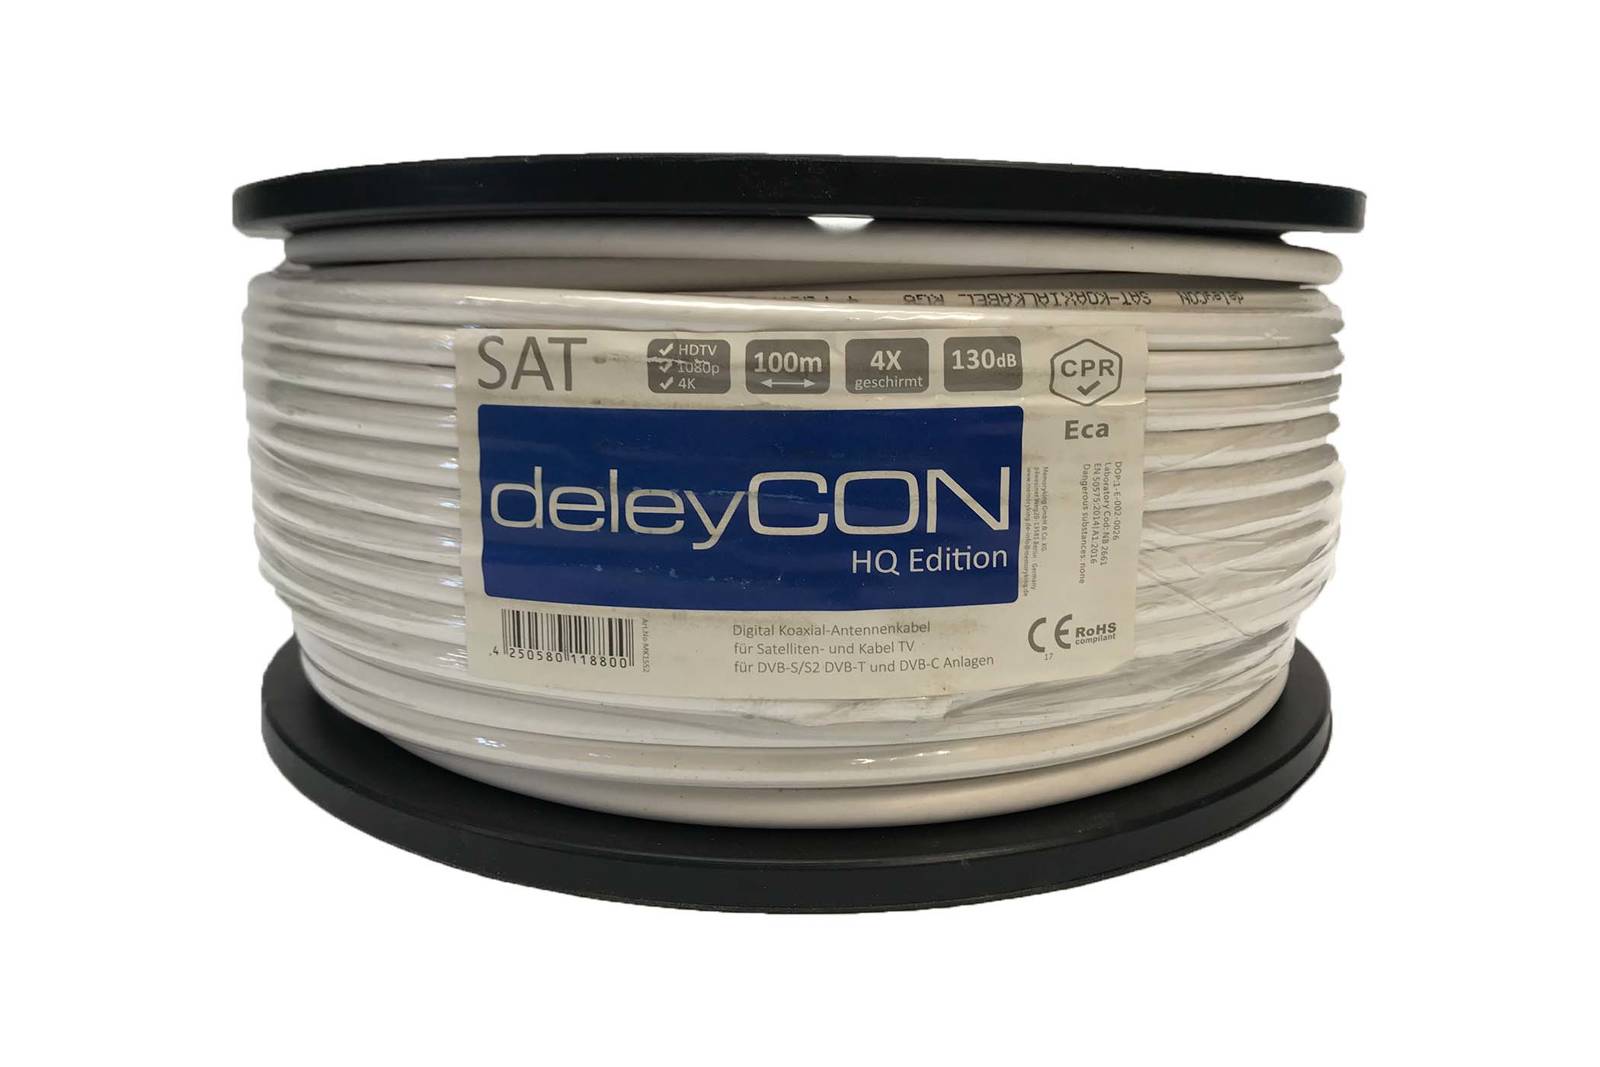 DeleyCON SAT 100m koaxiales Antennenkabel